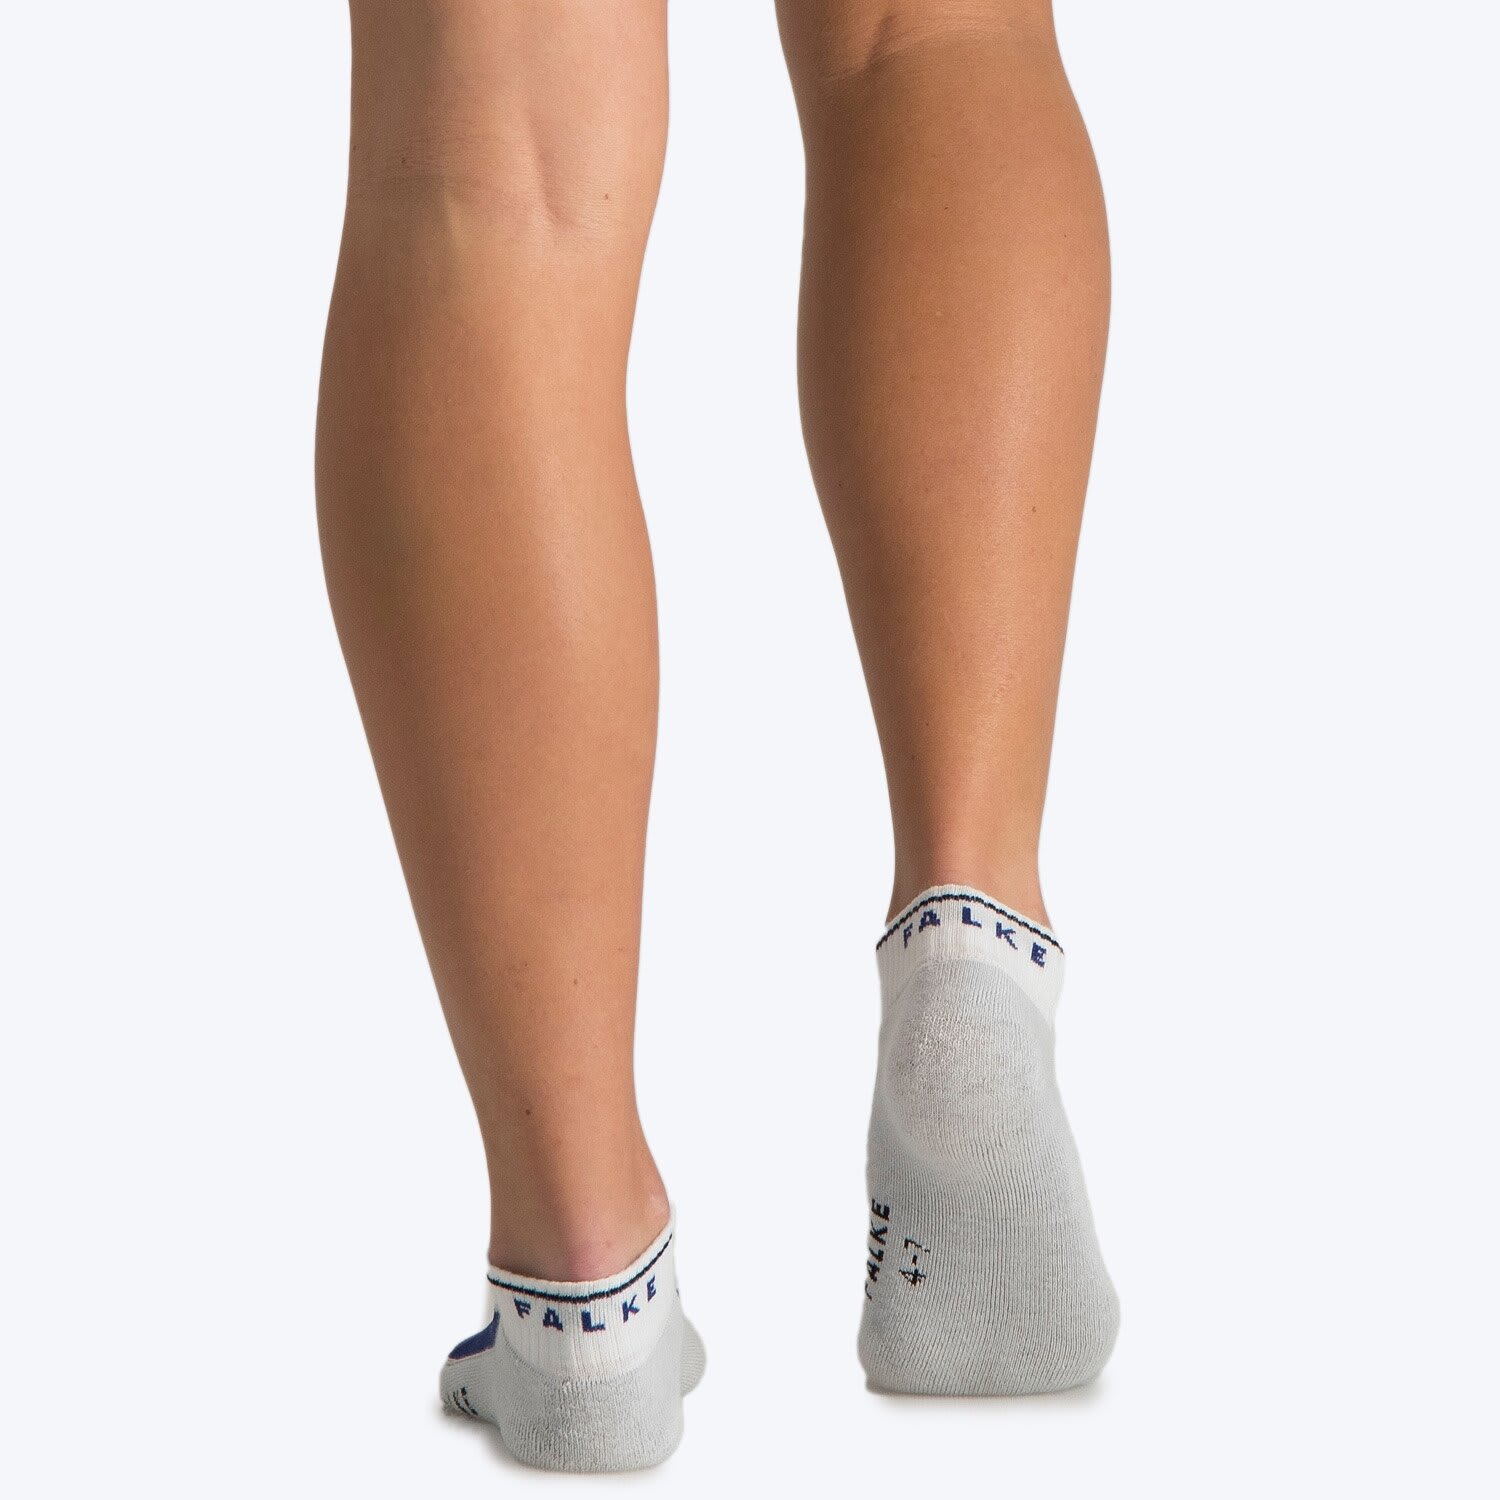 Sluit een verzekering af Voorwaardelijk chrysant Falke All Sport (Size 4-7) Socks | by Falke | Price: R 79,9 | PLU 1125804 |  Sportsmans Warehouse